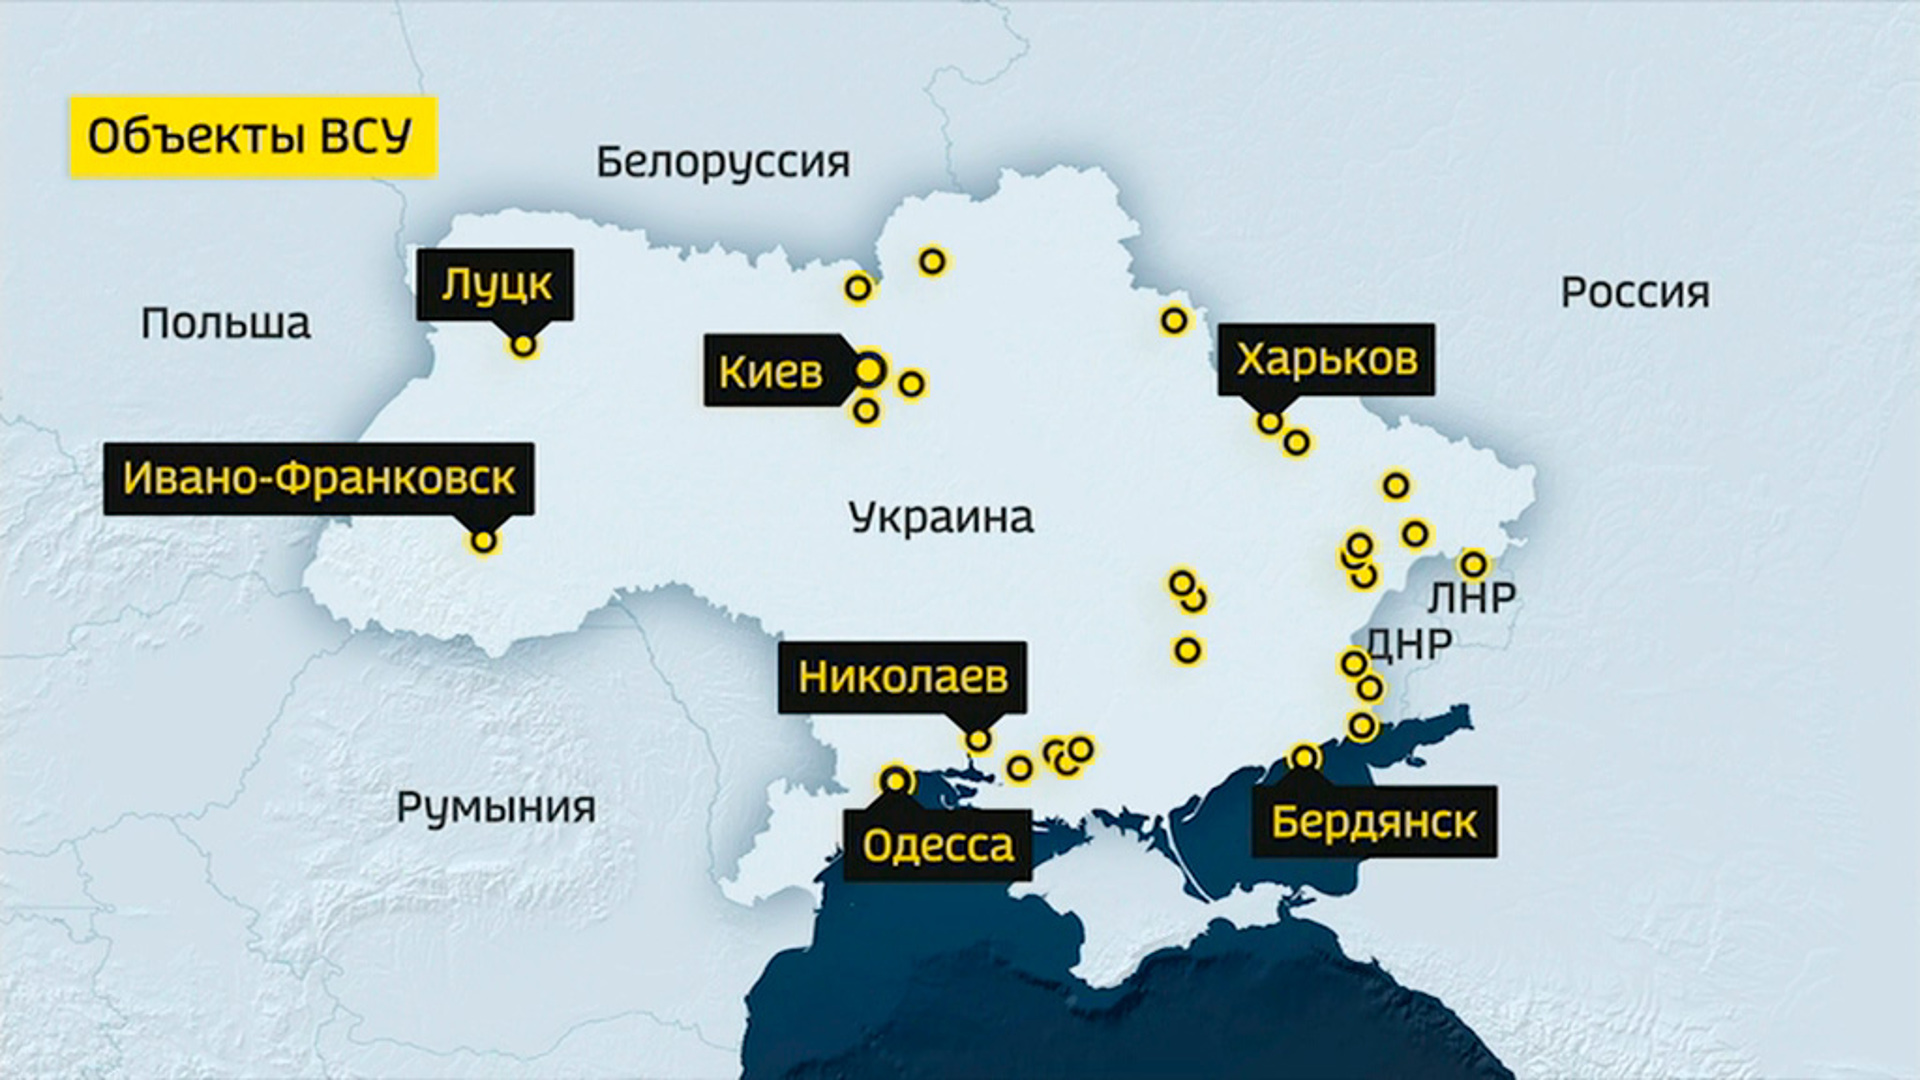 Результаты действий на украине сегодня. Военные базы Украины. Российские военные базы в украинн. Карта ПВО Украины. Военные базы Украины на карте.